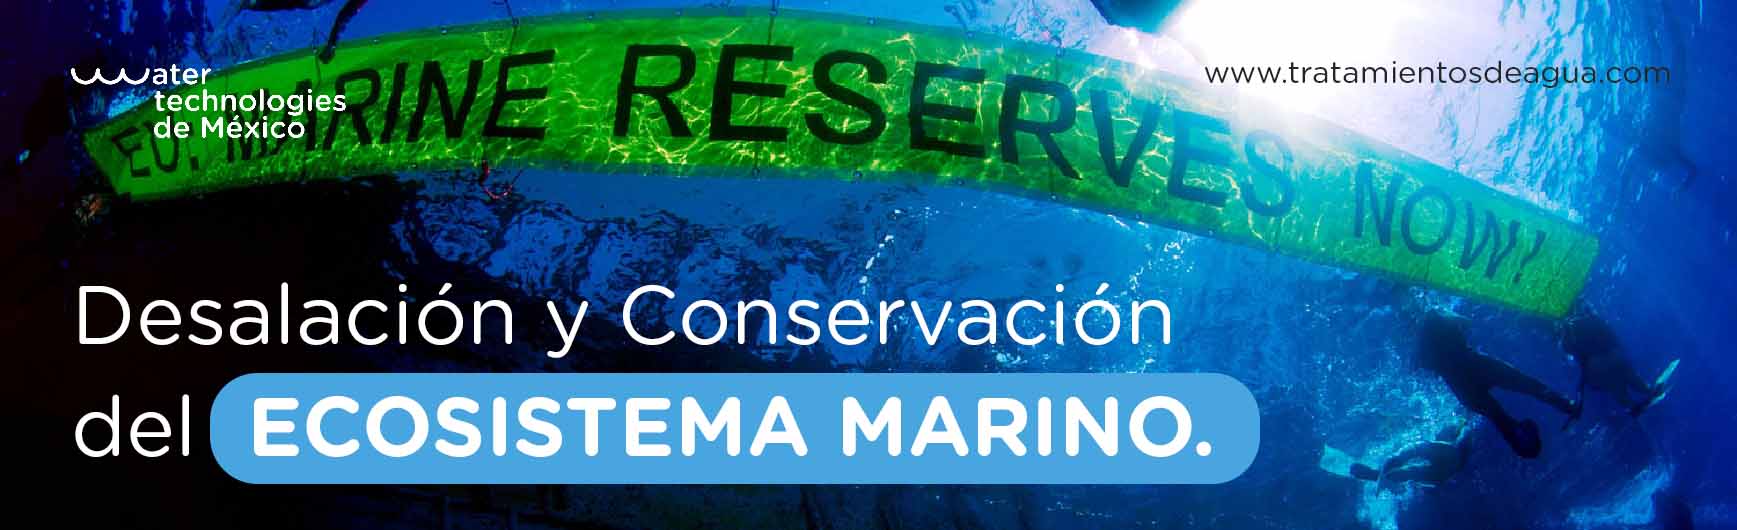 Desalación y Conservación del Ecosistema Marino.